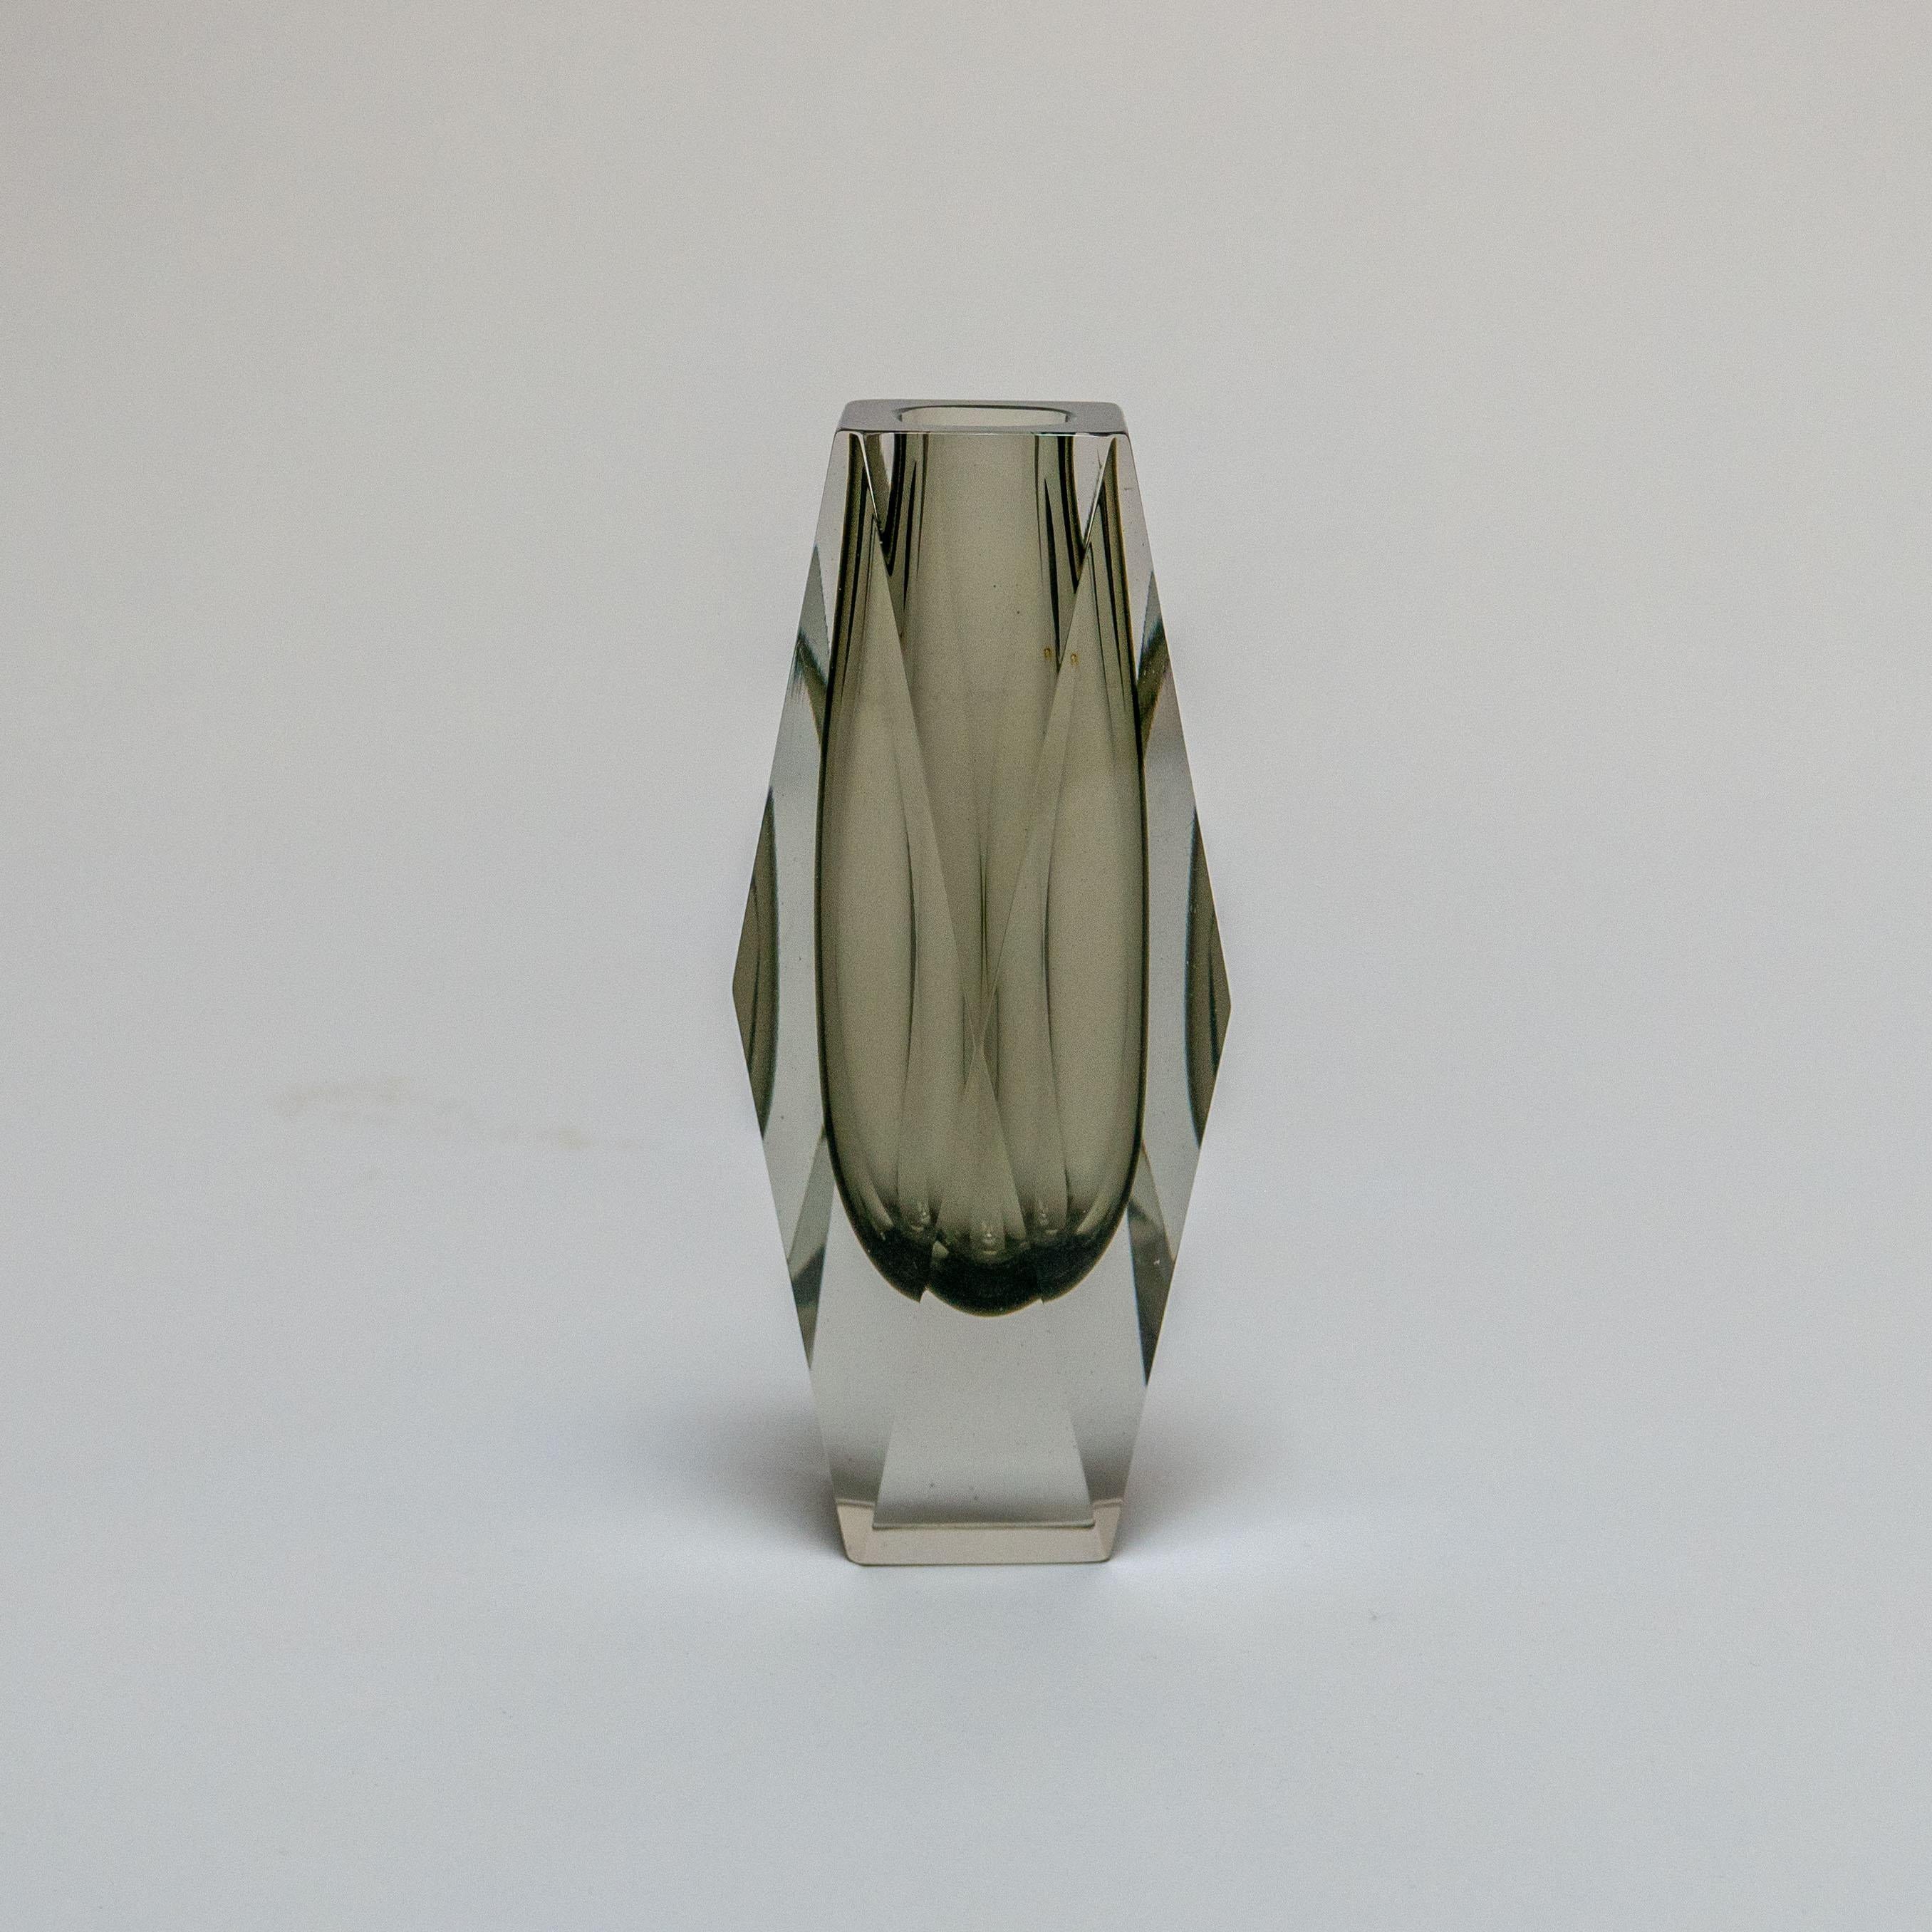 Flavio Poli, der allgemein als einer der produktivsten und fähigsten Designer von Vasen und Objekten aus Murano-Glas gilt, hat sich mit einigen der einflussreichsten und erfahrensten Glasproduzenten Muranos zusammengetan, um zeitlose Designstücke zu